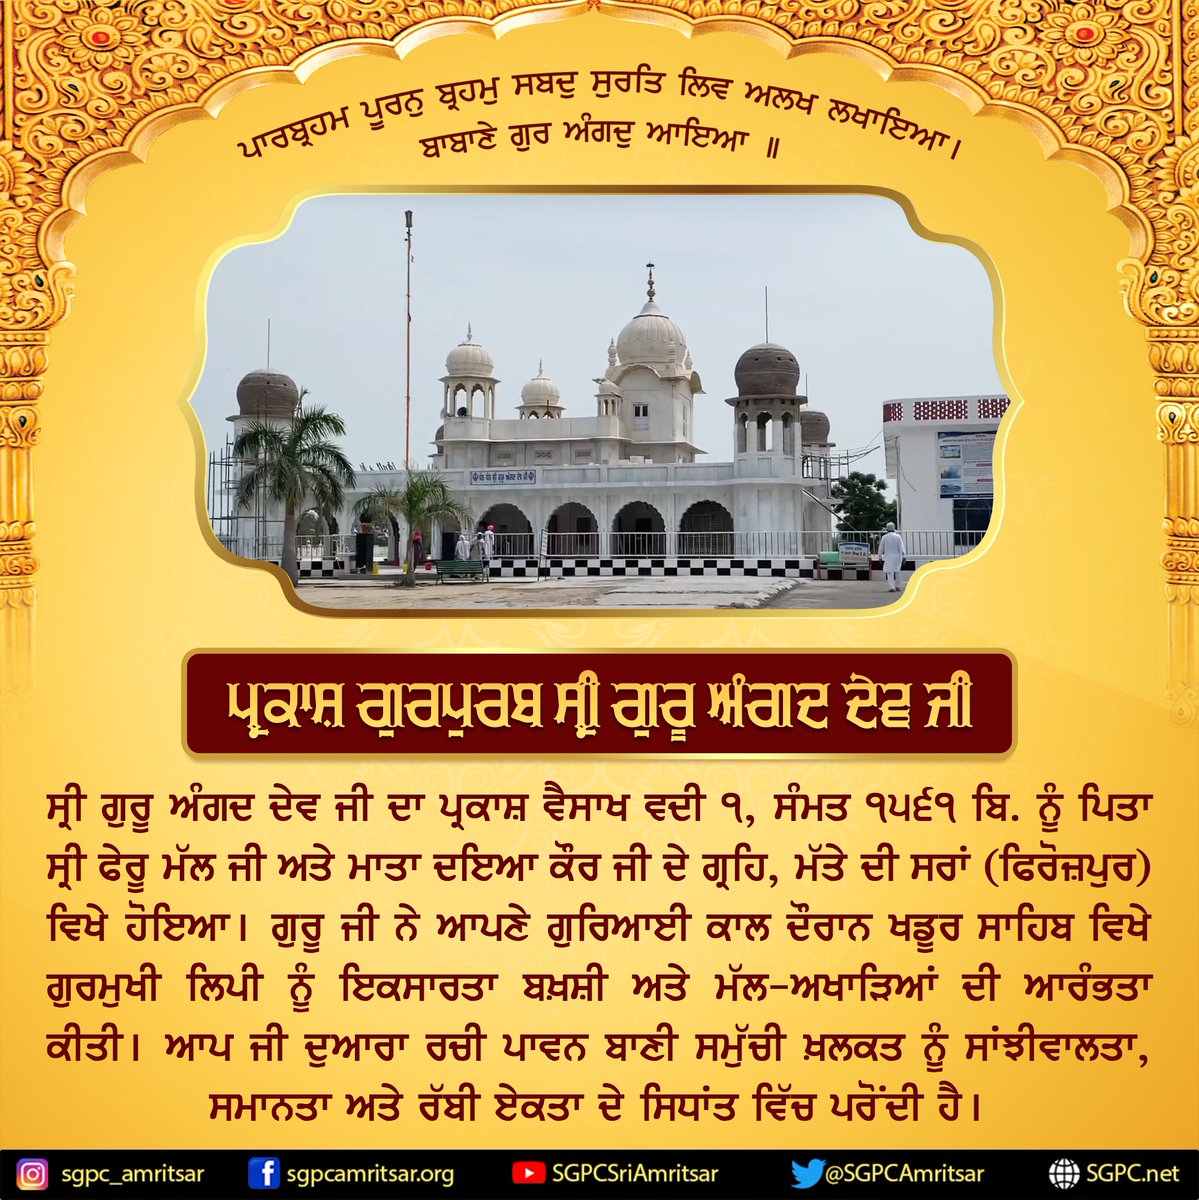 ਸ੍ਰੀ ਗੁਰੂ ਅੰਗਦ ਦੇਵ ਜੀ ਦੇ ਪ੍ਰਕਾਸ਼ ਗੁਰਪੁਰਬ ਦੀਆਂ ਸਮੂਹ ਸੰਗਤ ਨੂੰ ਲੱਖ-ਲੱਖ ਵਧਾਈਆਂ #GuruAngadDevJI #Sikhs #SikhHistory #SikhDays